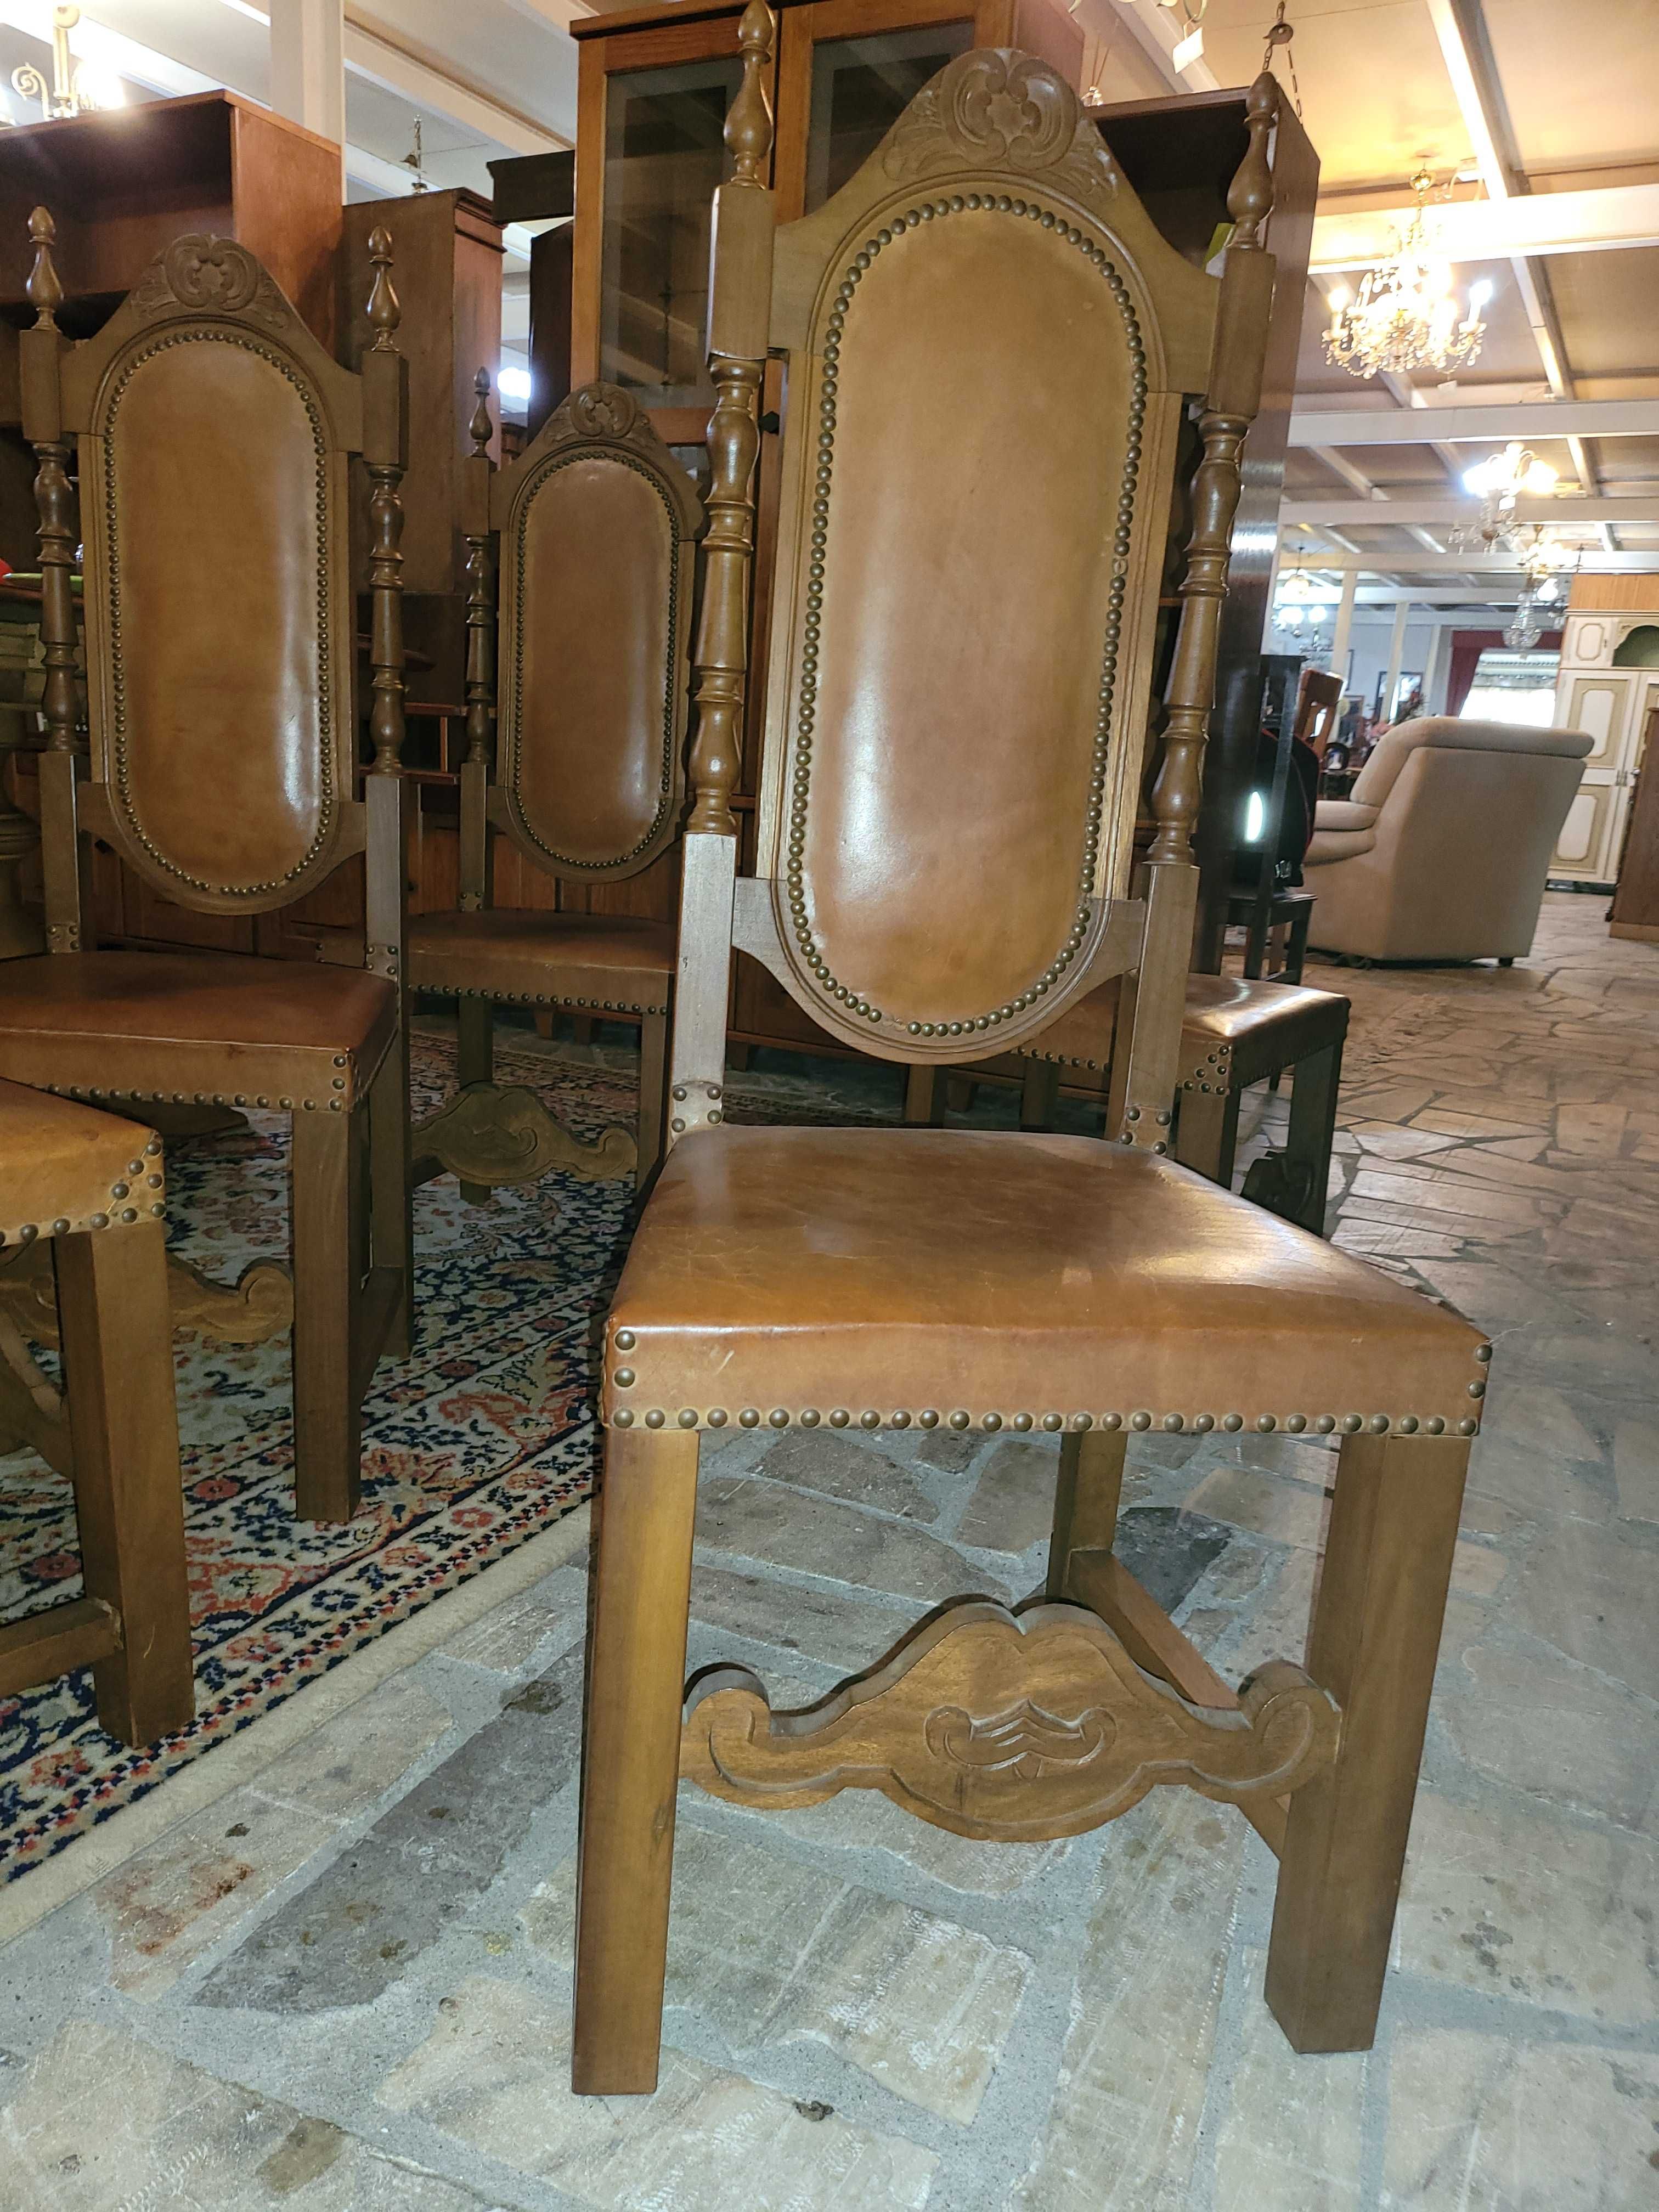 Cadeiras de sala em madeira e couro - bom estado geral - Valor unitá